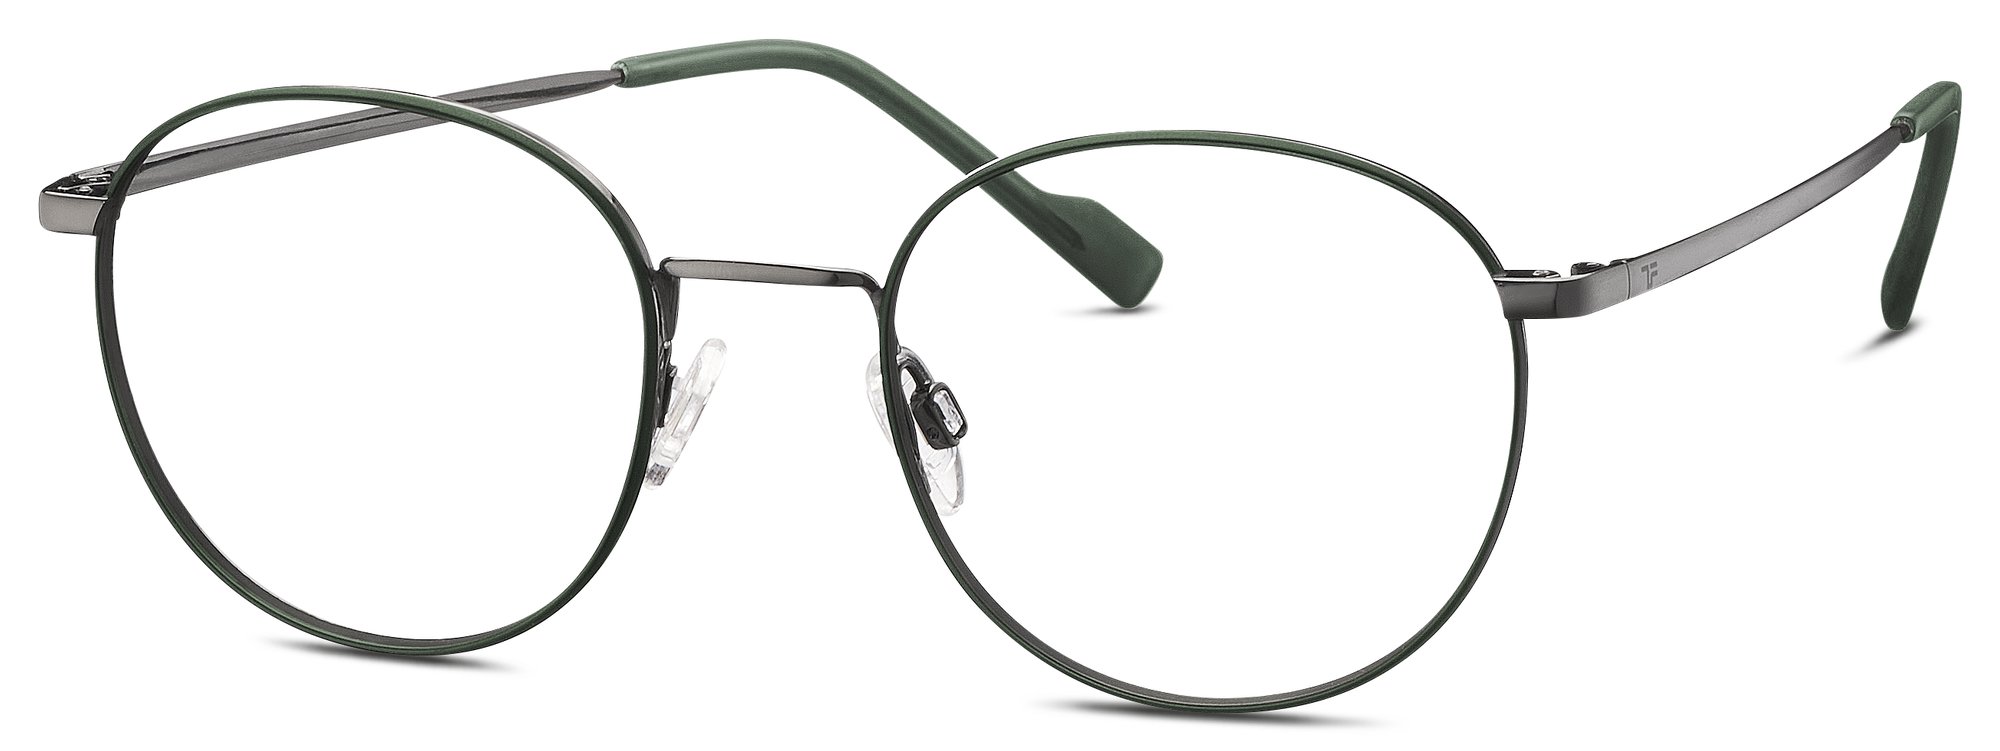 Das Bild zeigt die Korrektionsbrille 820959 34 von der Marke Titanflex in grau.